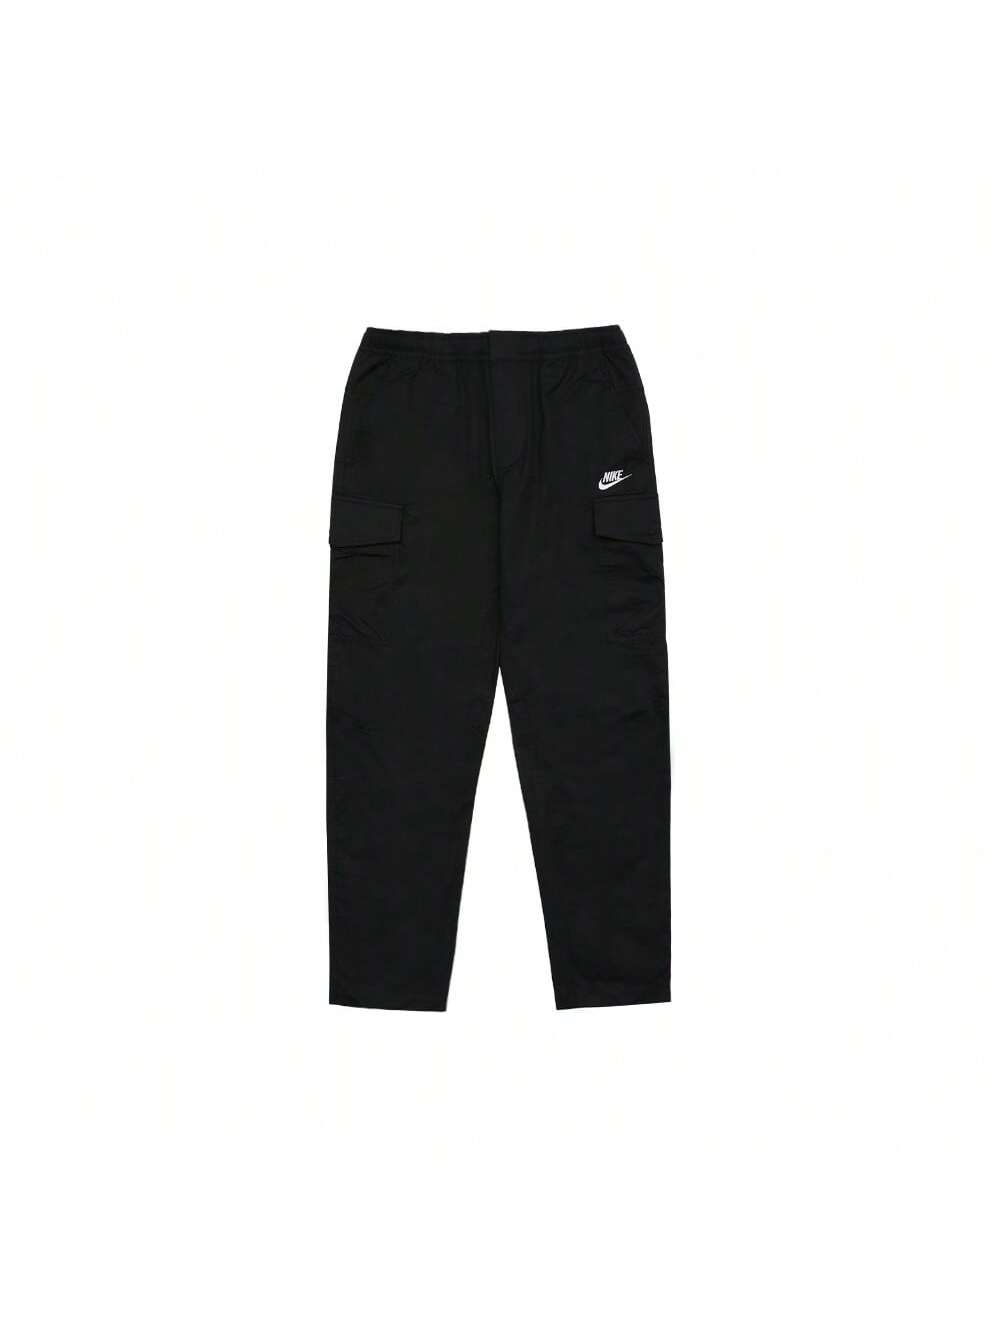 Мужские брюки-карго без подкладки Nike DD5207-010 тканые брюки Club NSW, черный брюки карго черные gulliver